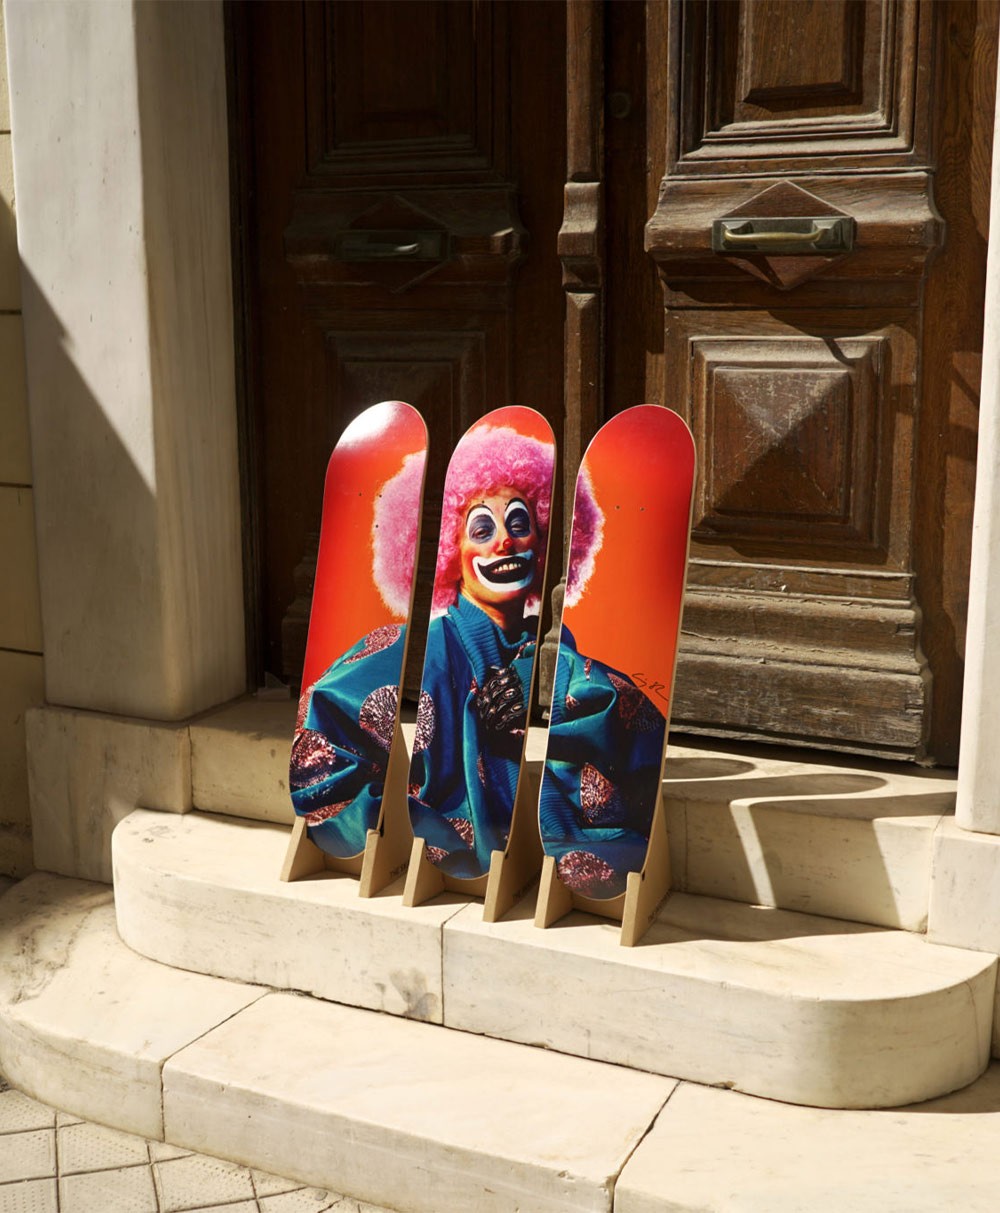 Moodbild "Clown" designed by Cindy Sherman von The Skateroom im RAUM Conceptstore